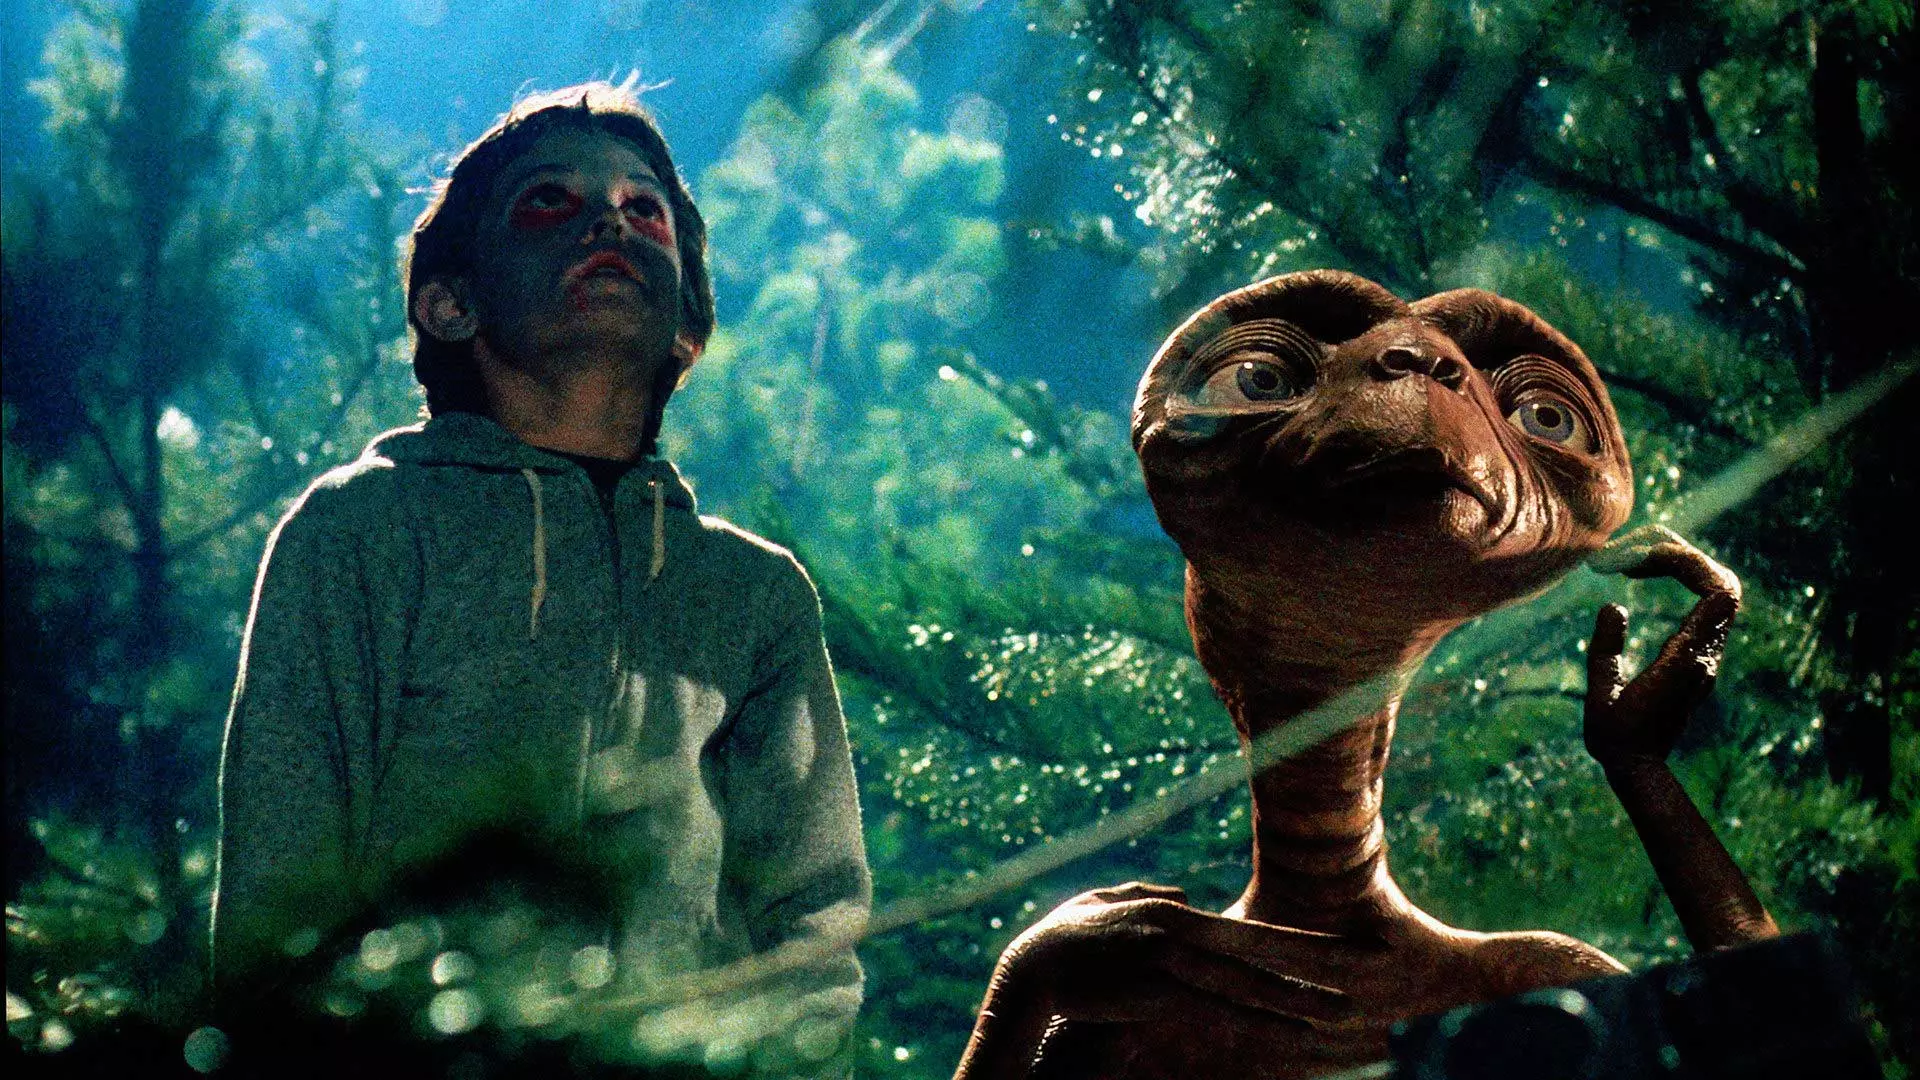 فیلم E.T. Extra-Terrestrial استیون اسپیلبرگ و موجود فضایی با پسر در جنگل مشغول نگاه به آسمان